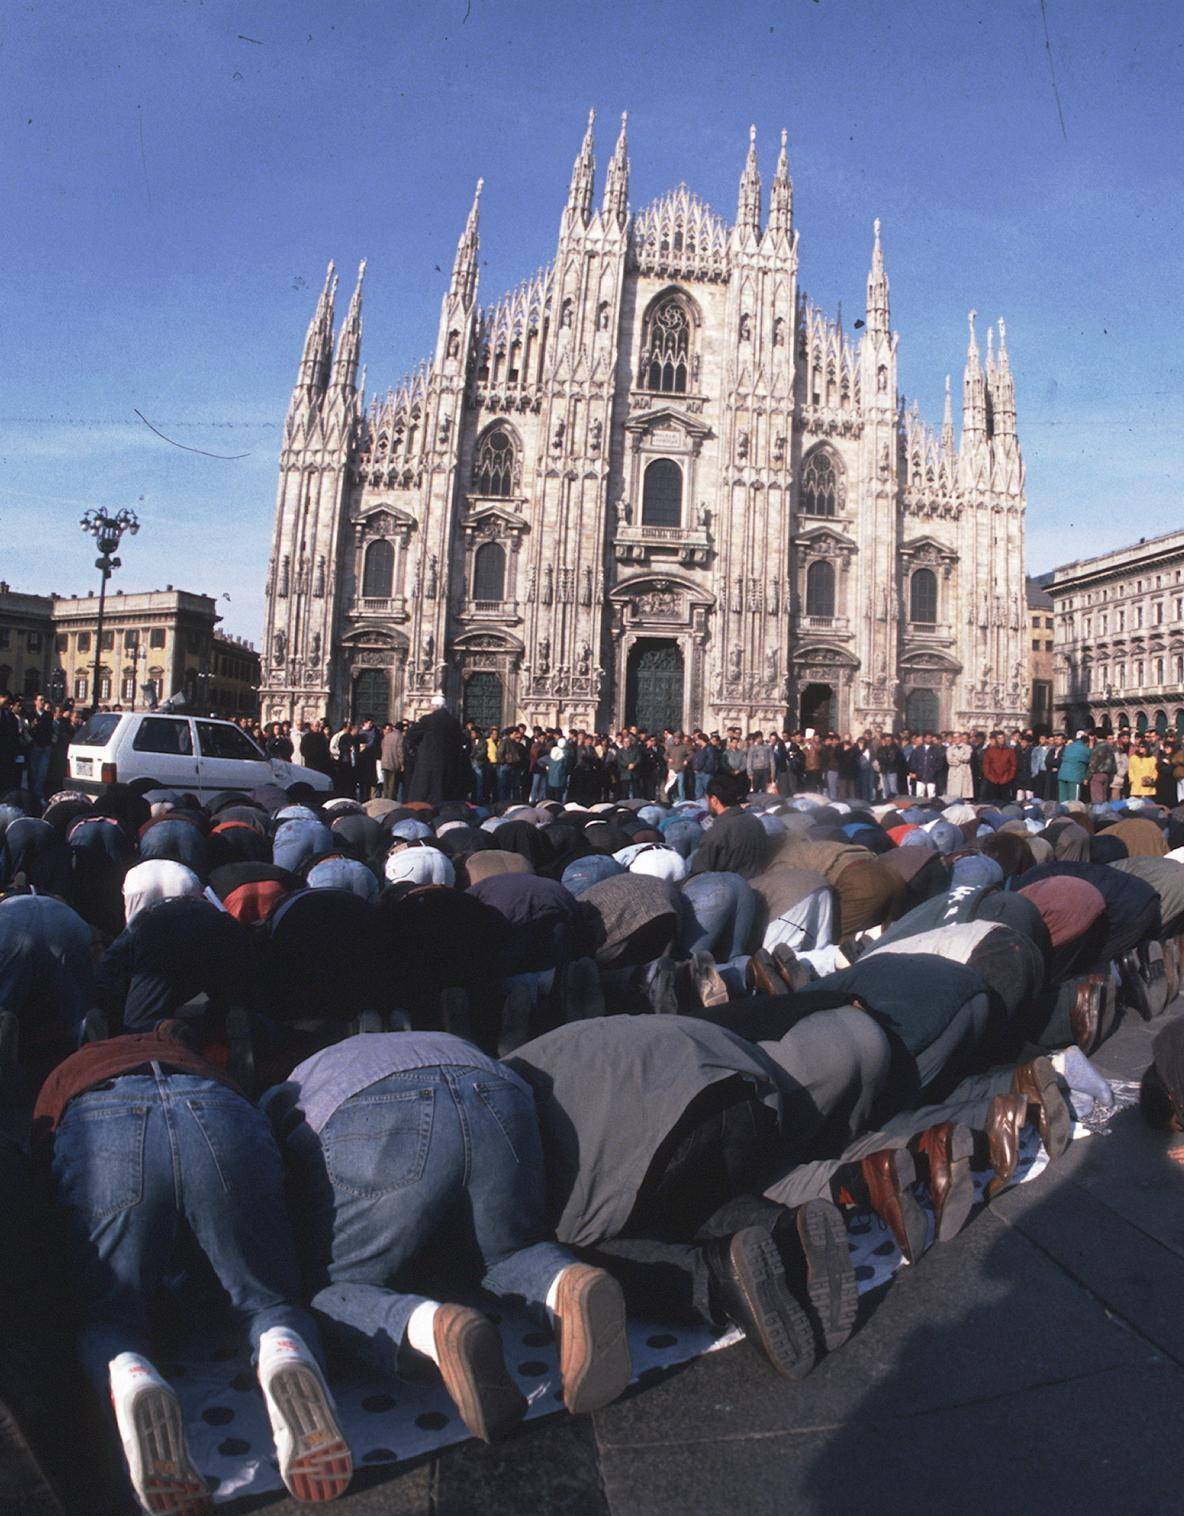 La moschea ultrà di Milano "L'Isis? Un problema vostro"